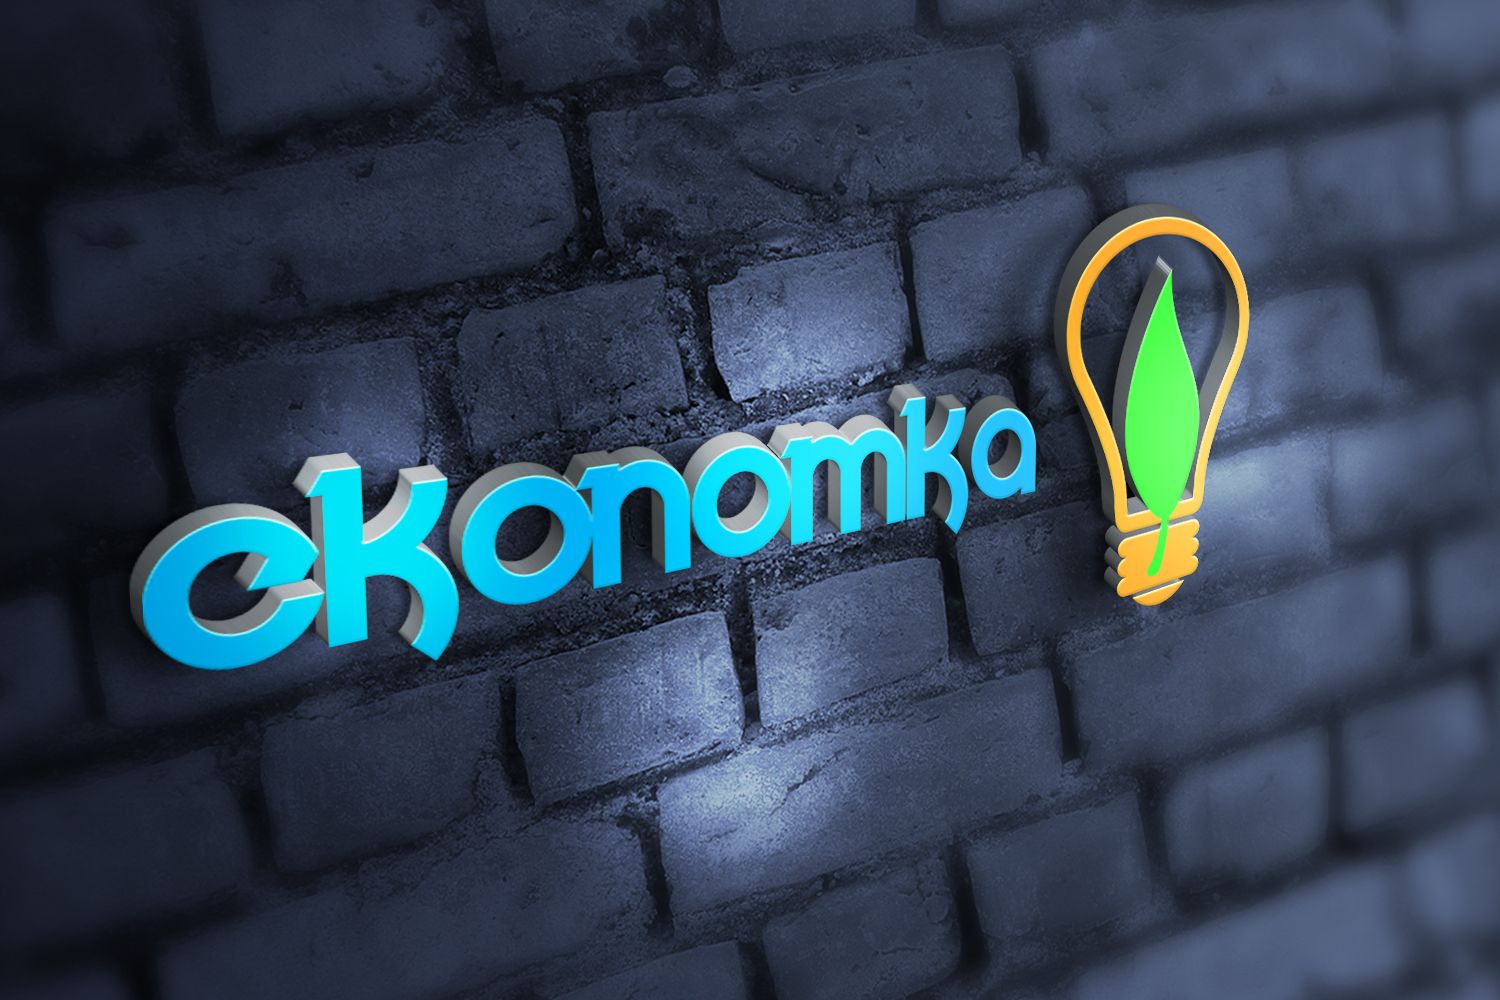 Логотип для энергосберигающих технологий Ekonomka - дизайнер fop_kai